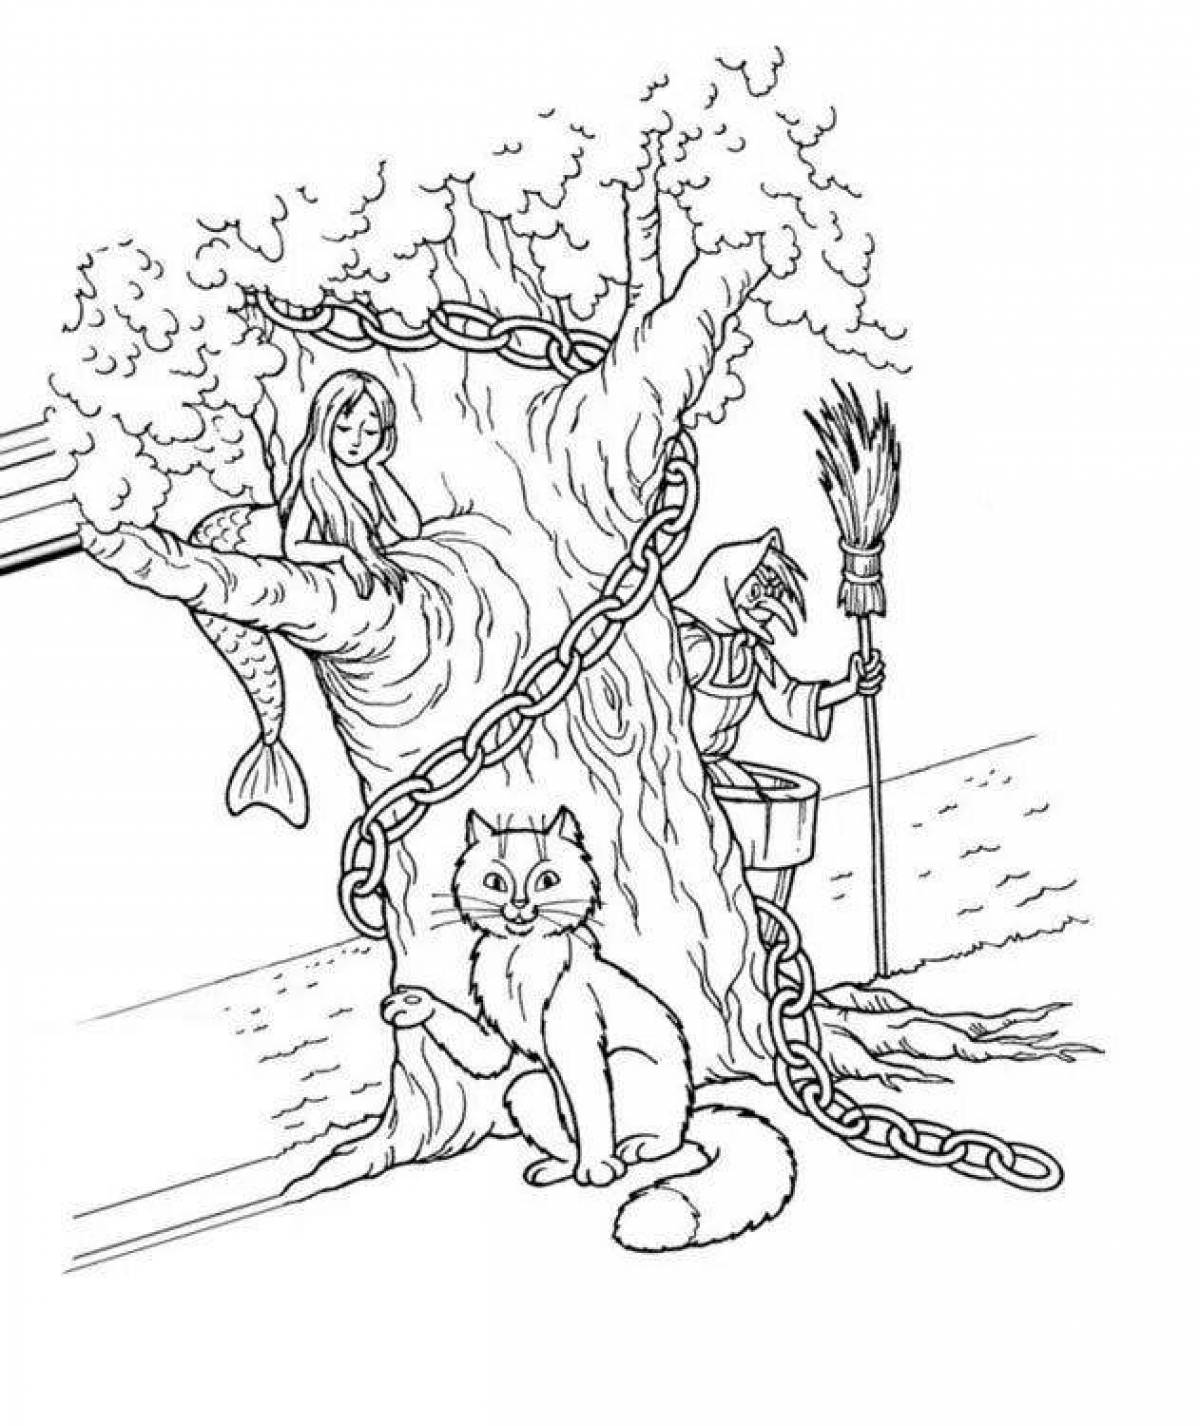 Рисунок по сказке Пушкина у Лукоморья дуб зеленый